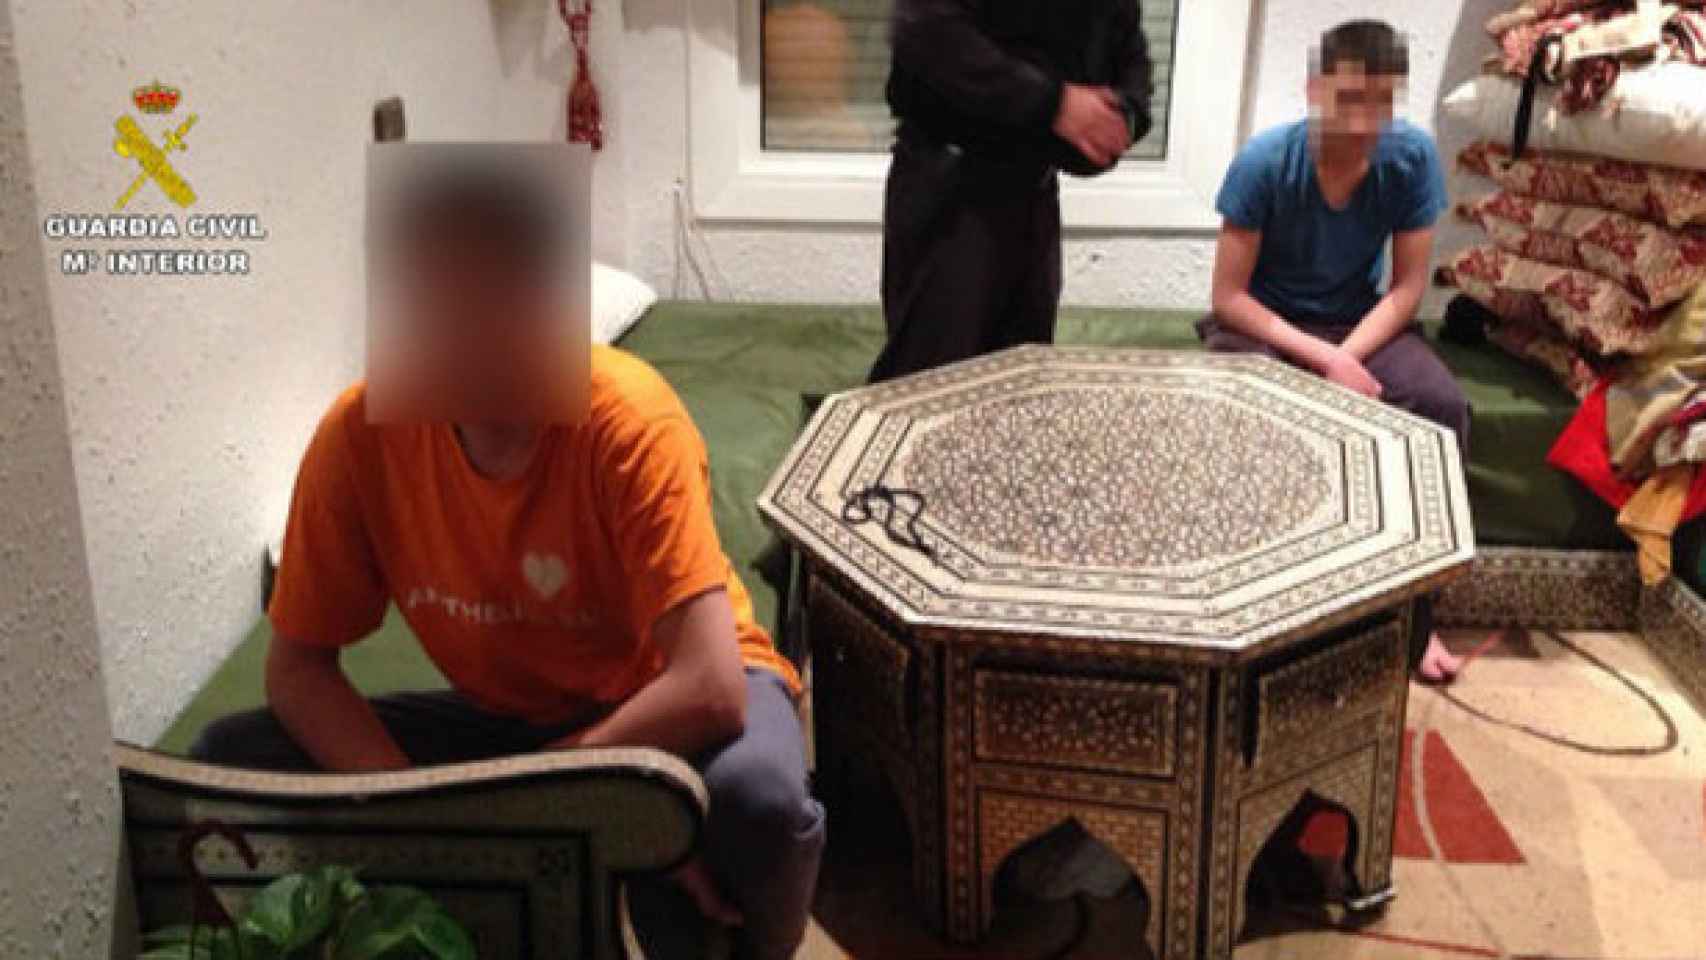 Imagen de la operación en la que fueron detenidos dos menores gemelos por yihadismo.